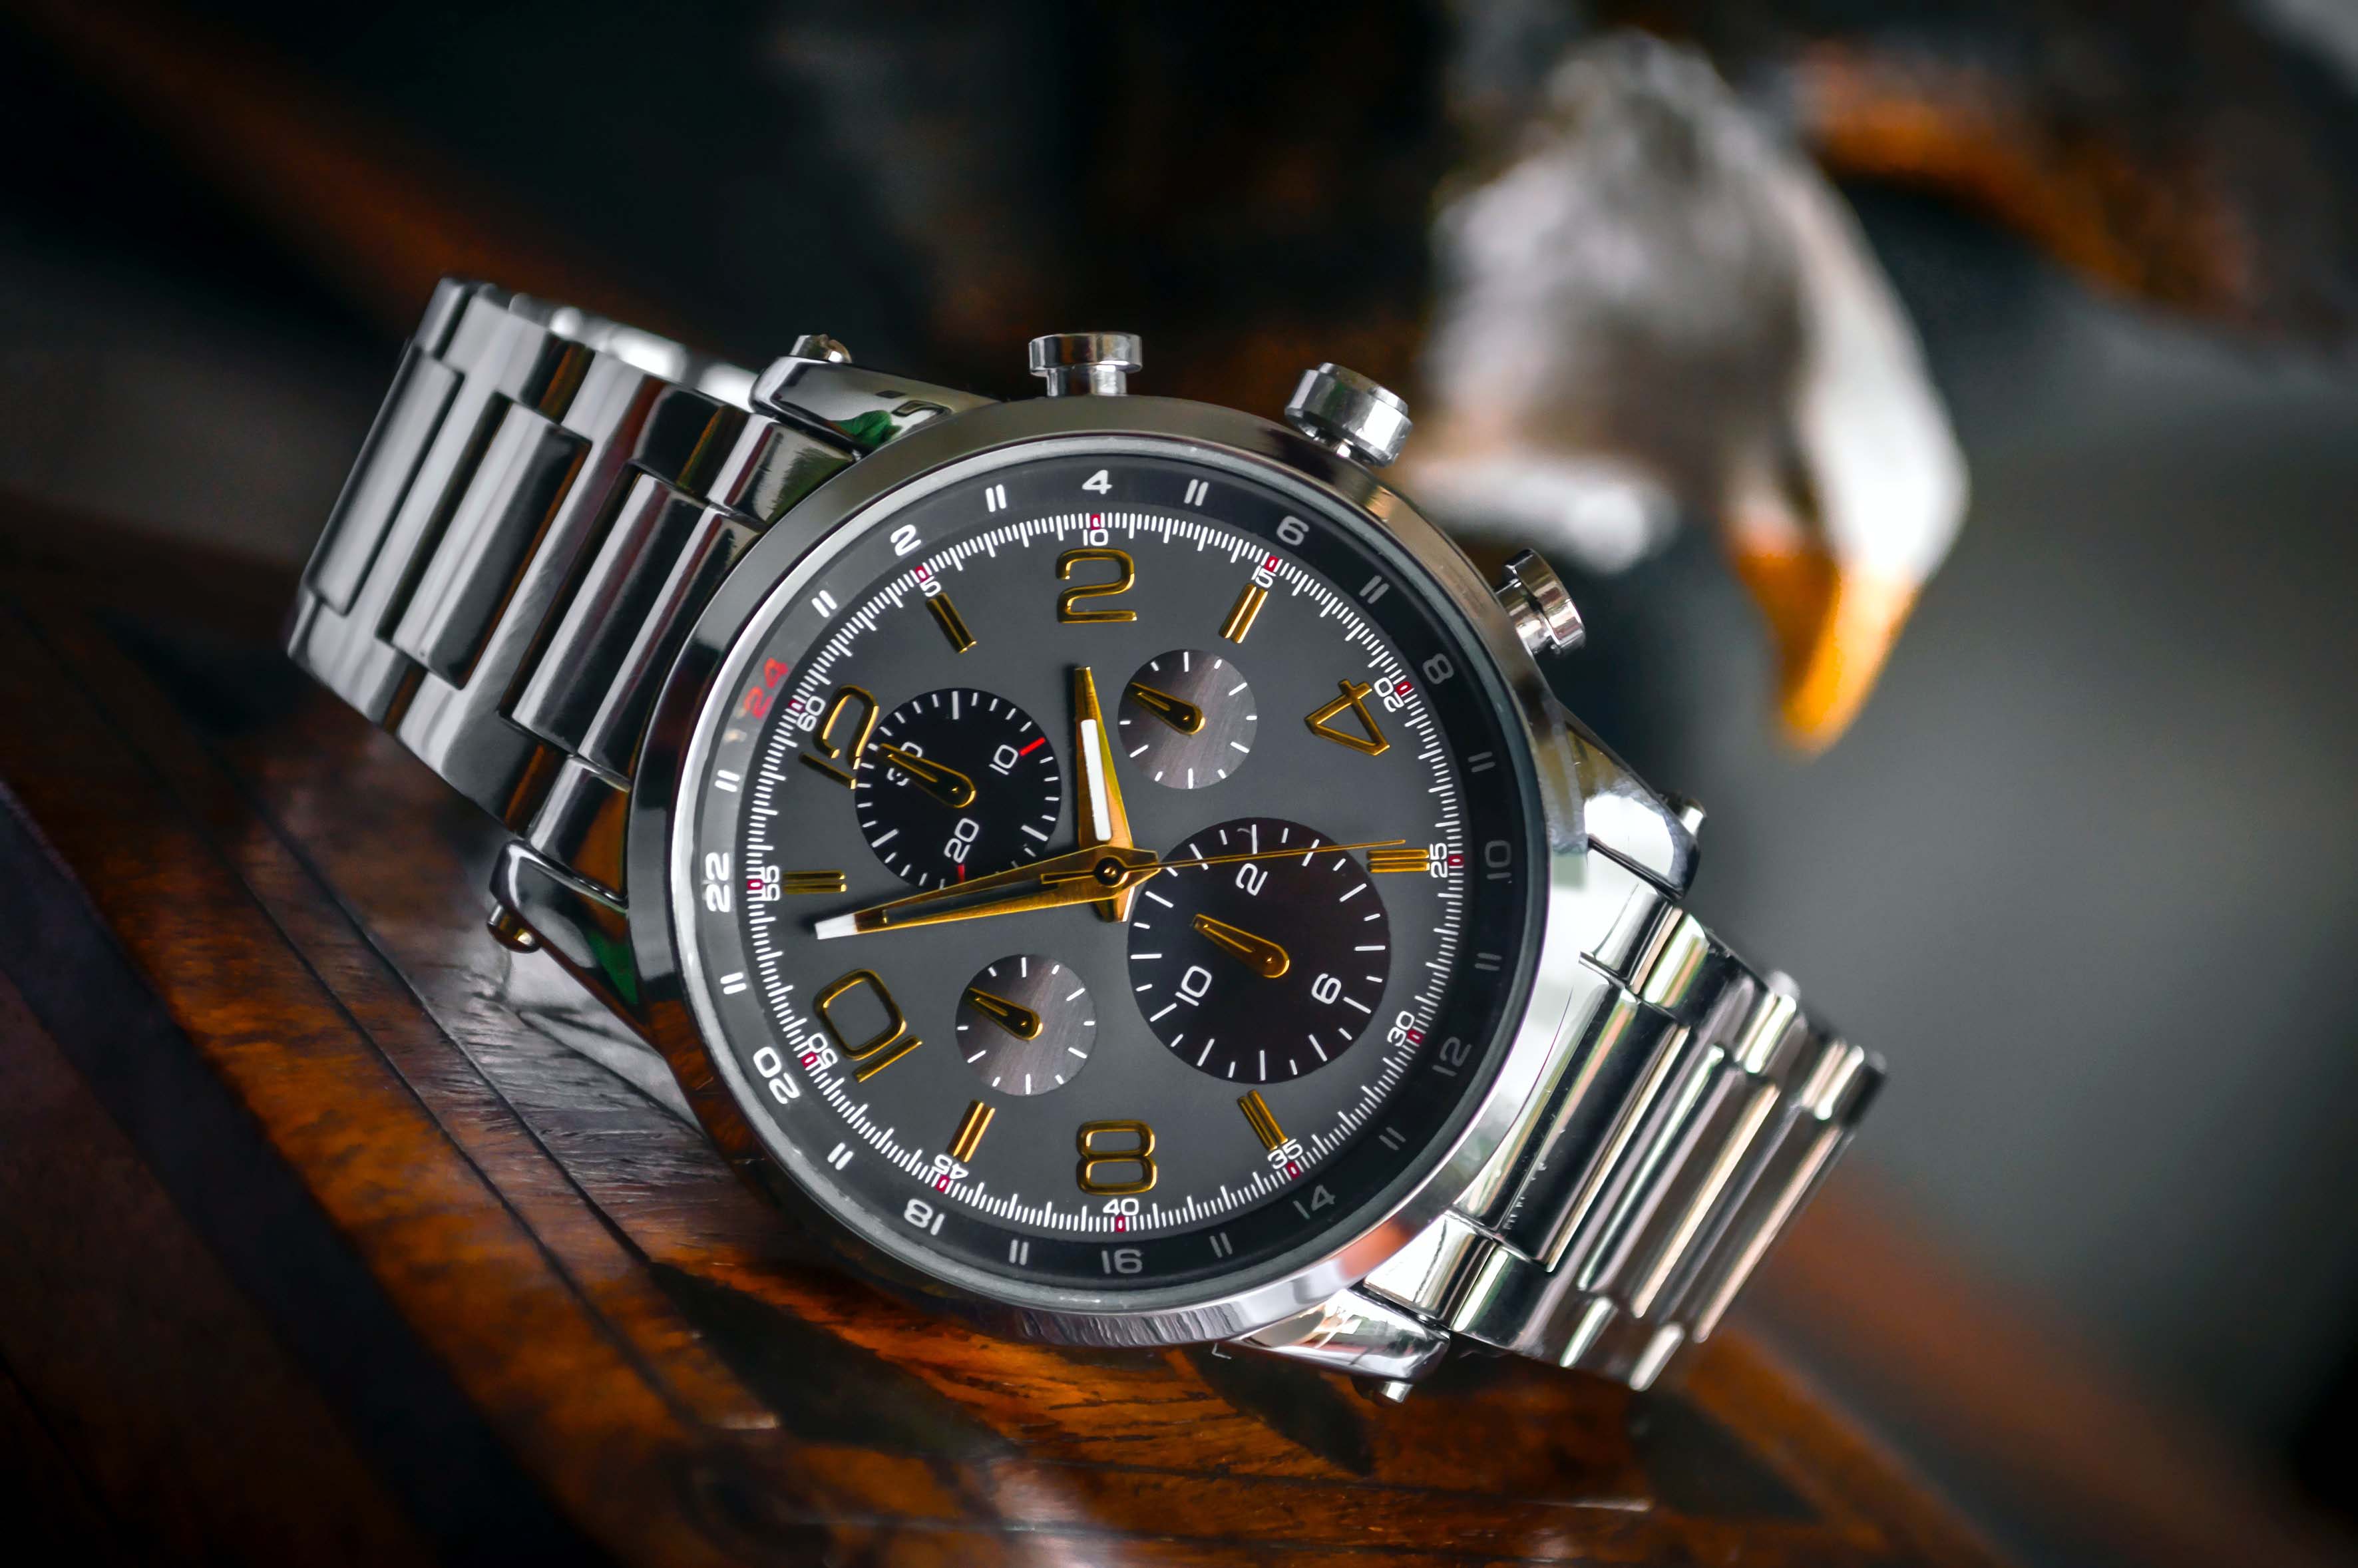 A luxury watch on a wooden desk